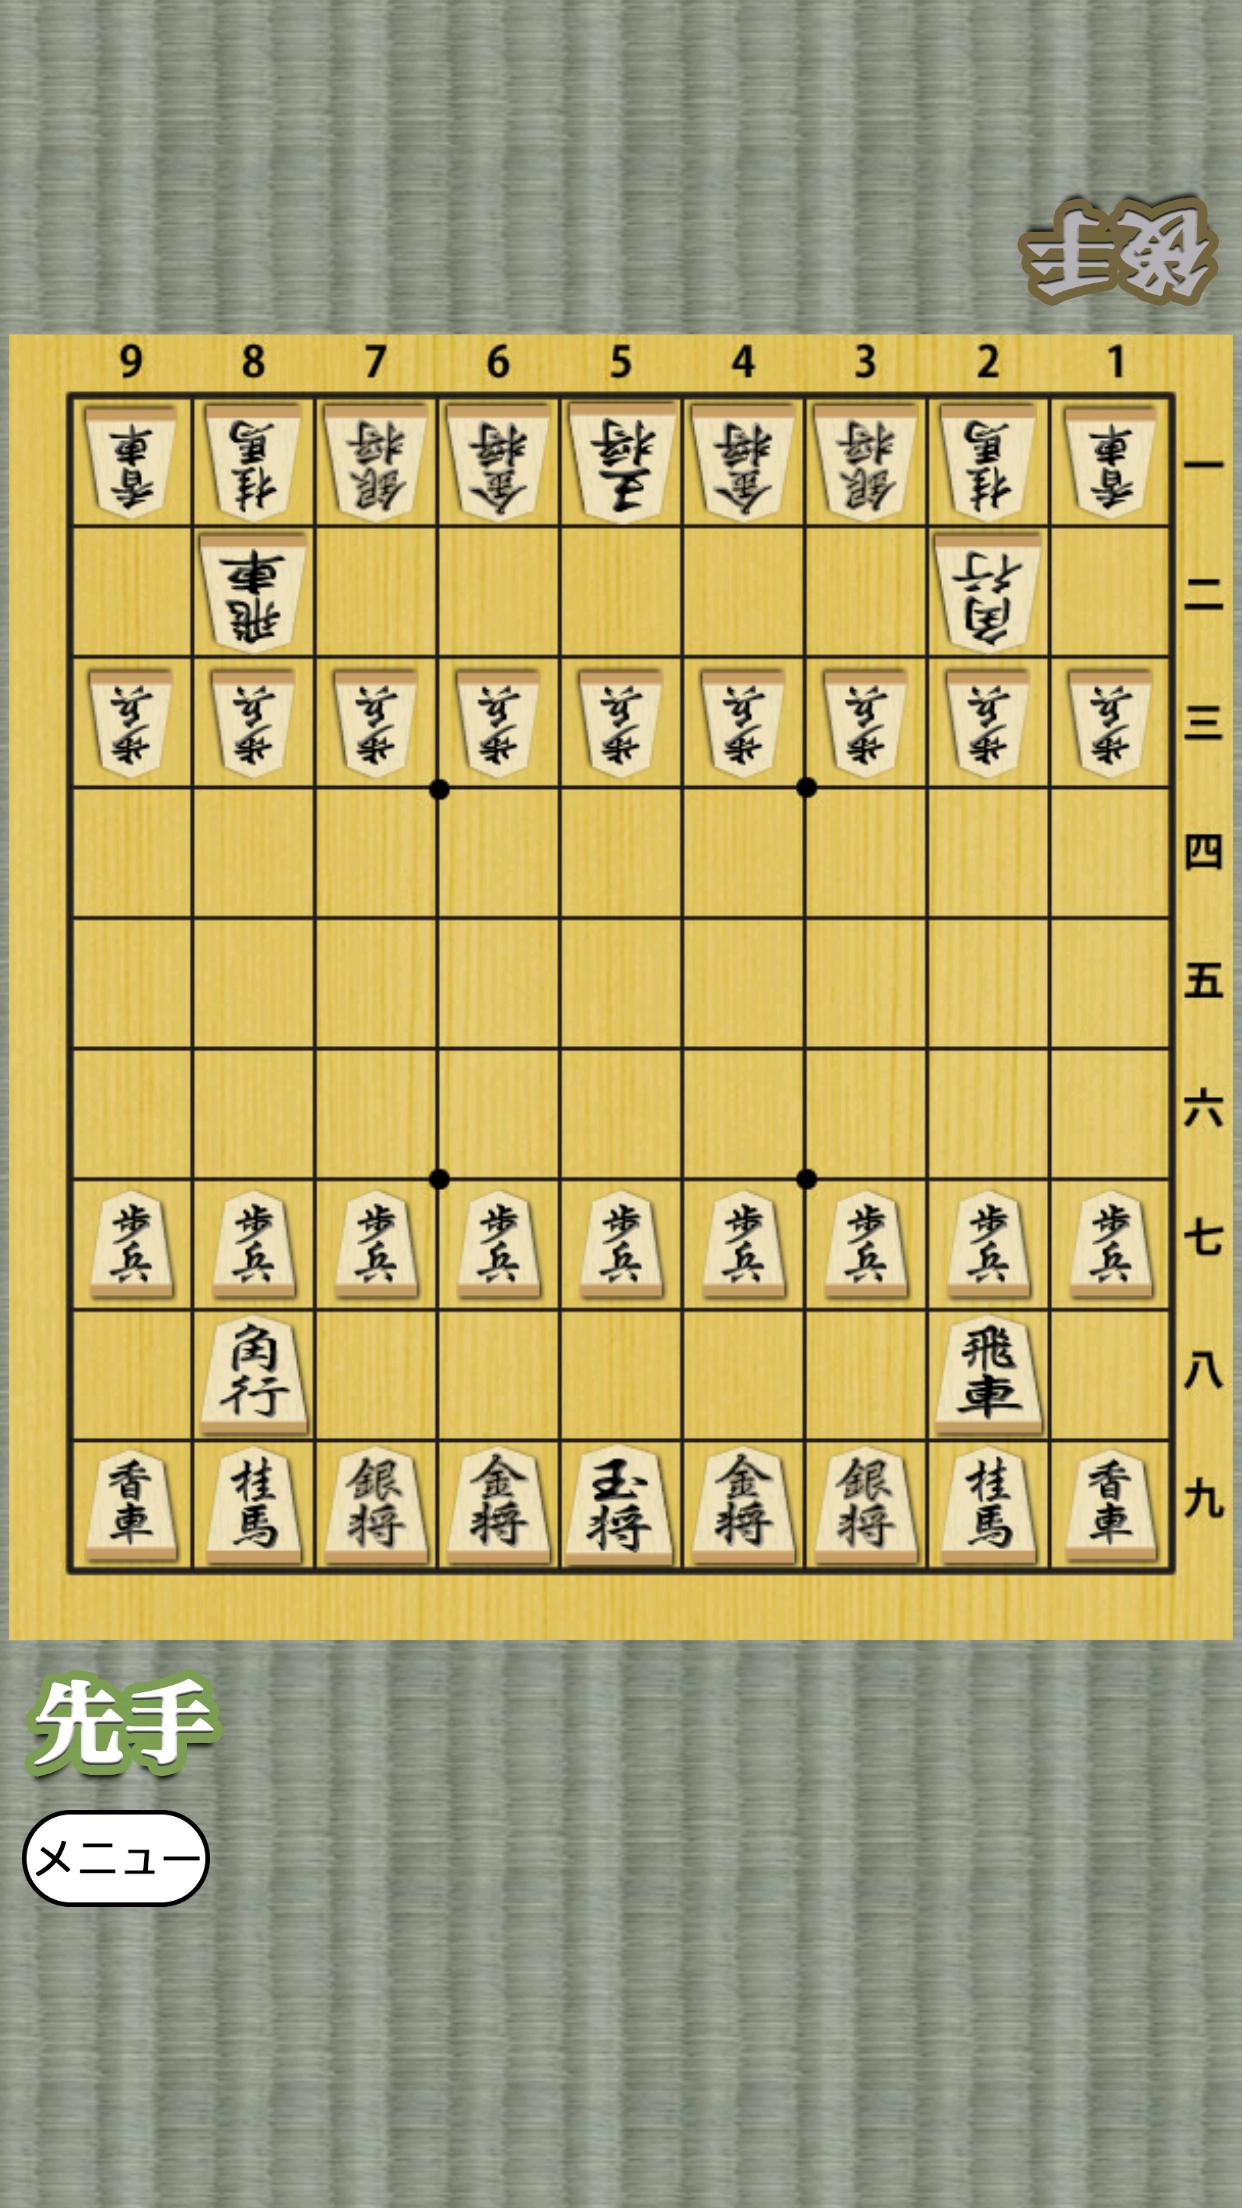 Shogi for beginners 1.0.4 Screenshot 9